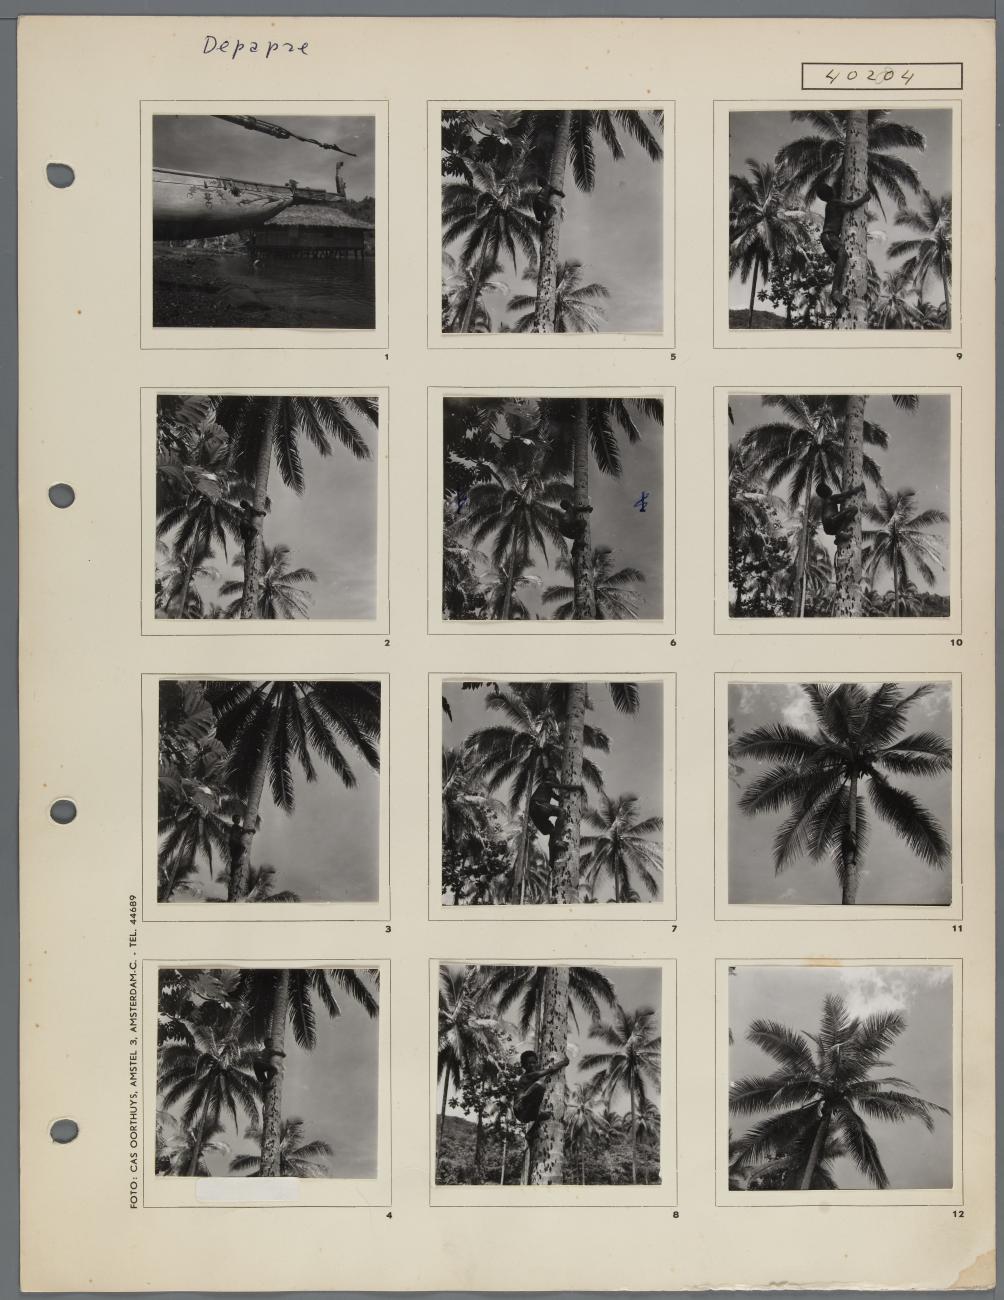 BD/163/183 - 
Depapre, jongen klimt in kokospalm
